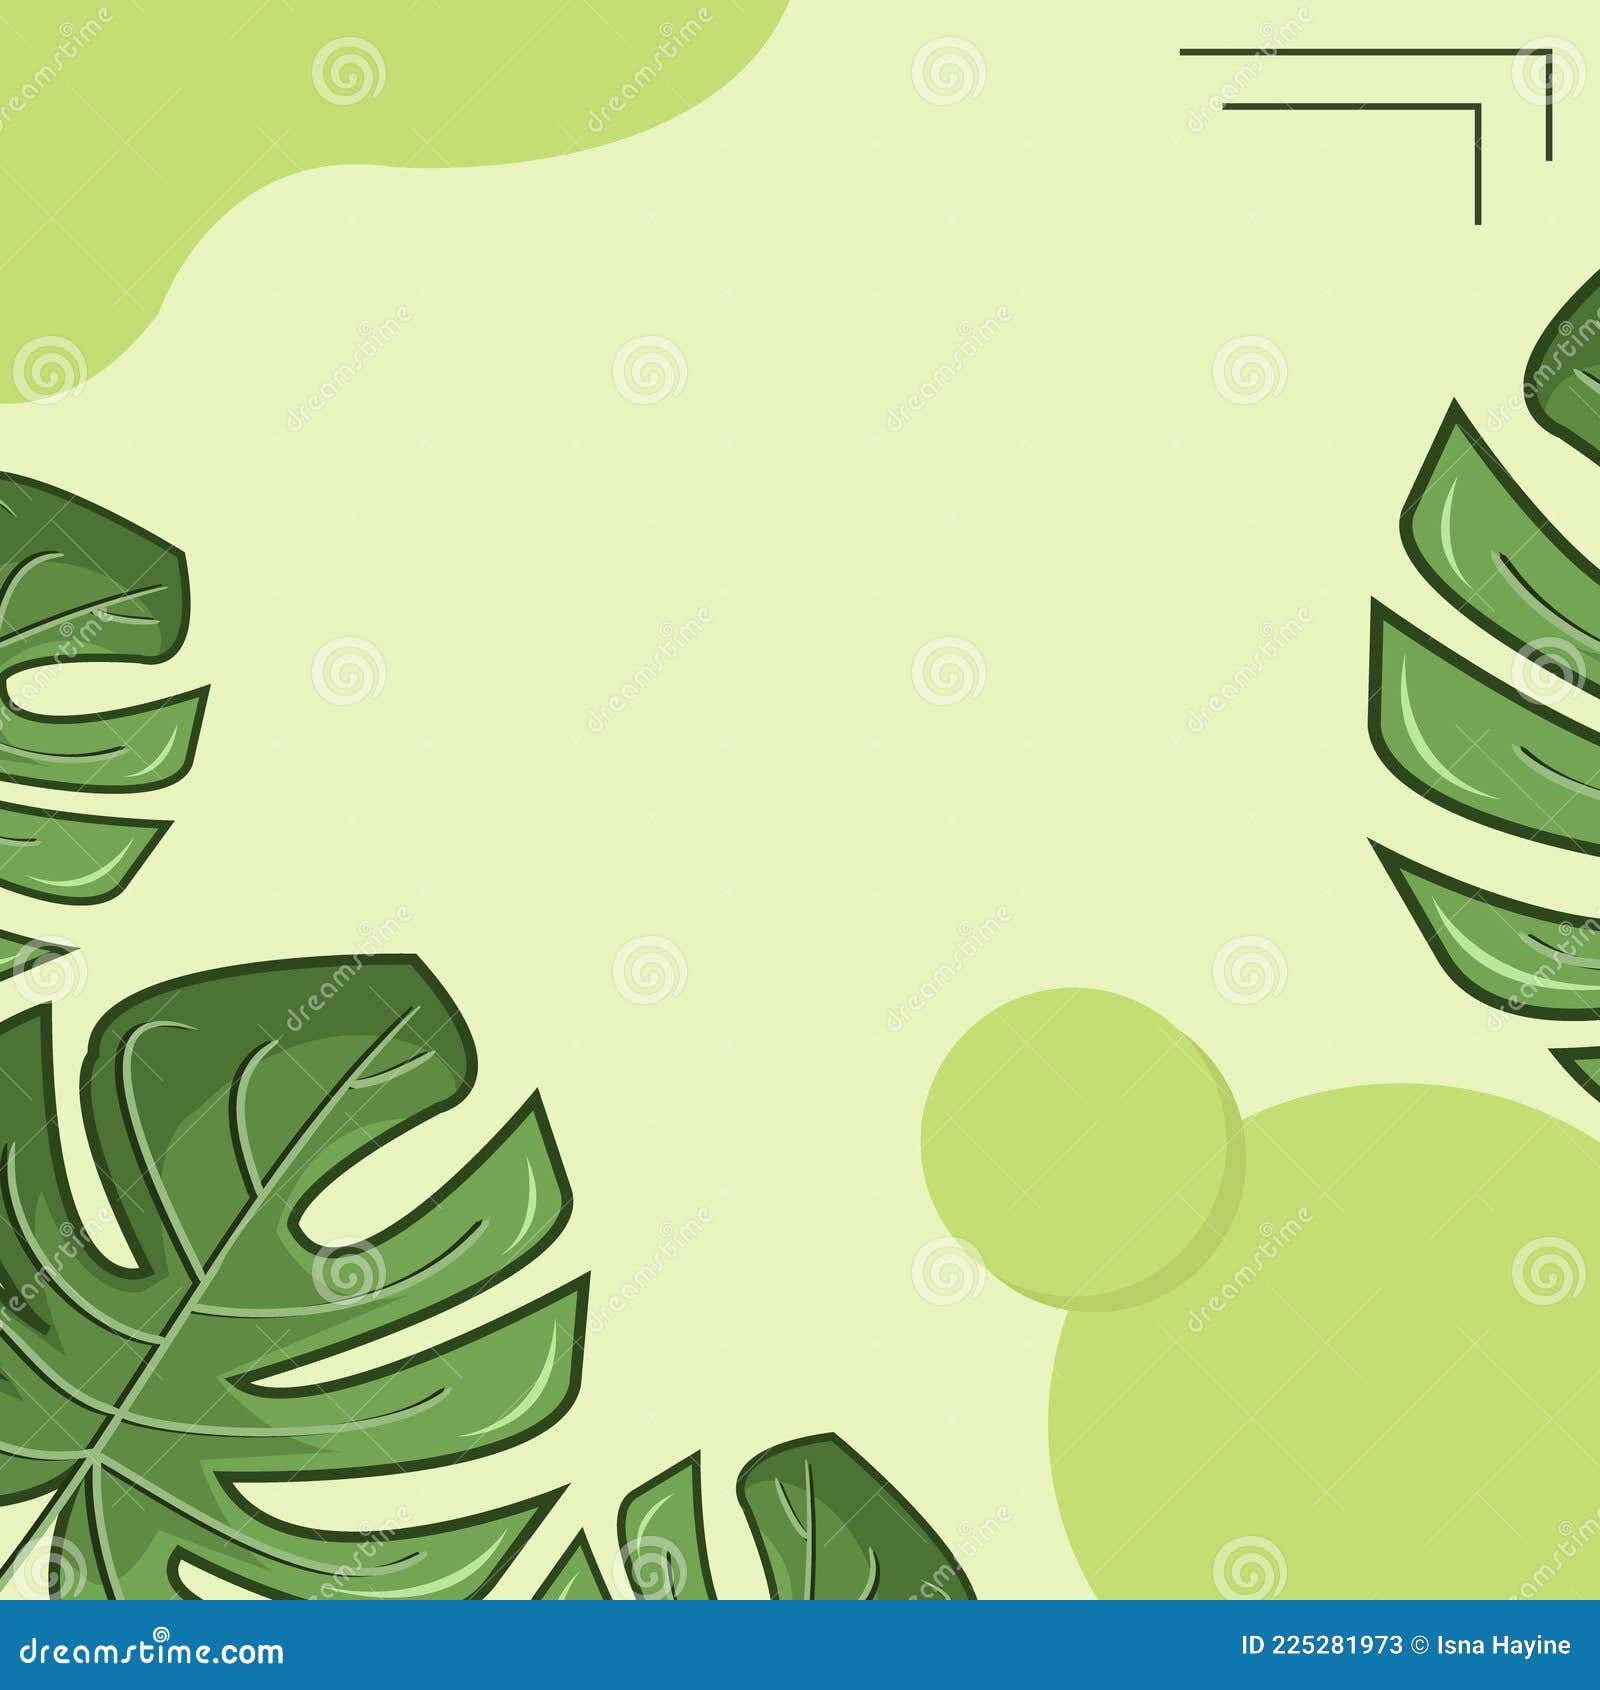 Vector lá cây xanh nền trang trí đồ họa là một lựa chọn hoàn hảo cho những người yêu thích thiết kế đồ họa. Với sự kết hợp tốt giữa gam màu xanh và họa tiết lá cây, vector này sẽ tạo nên một không gian trang trí tuyệt vời và đầy tính sáng tạo. Hãy khám phá và sử dụng vector lá cây xanh để trang trí đồ họa của bạn thật nổi bật và độc đáo nhé!